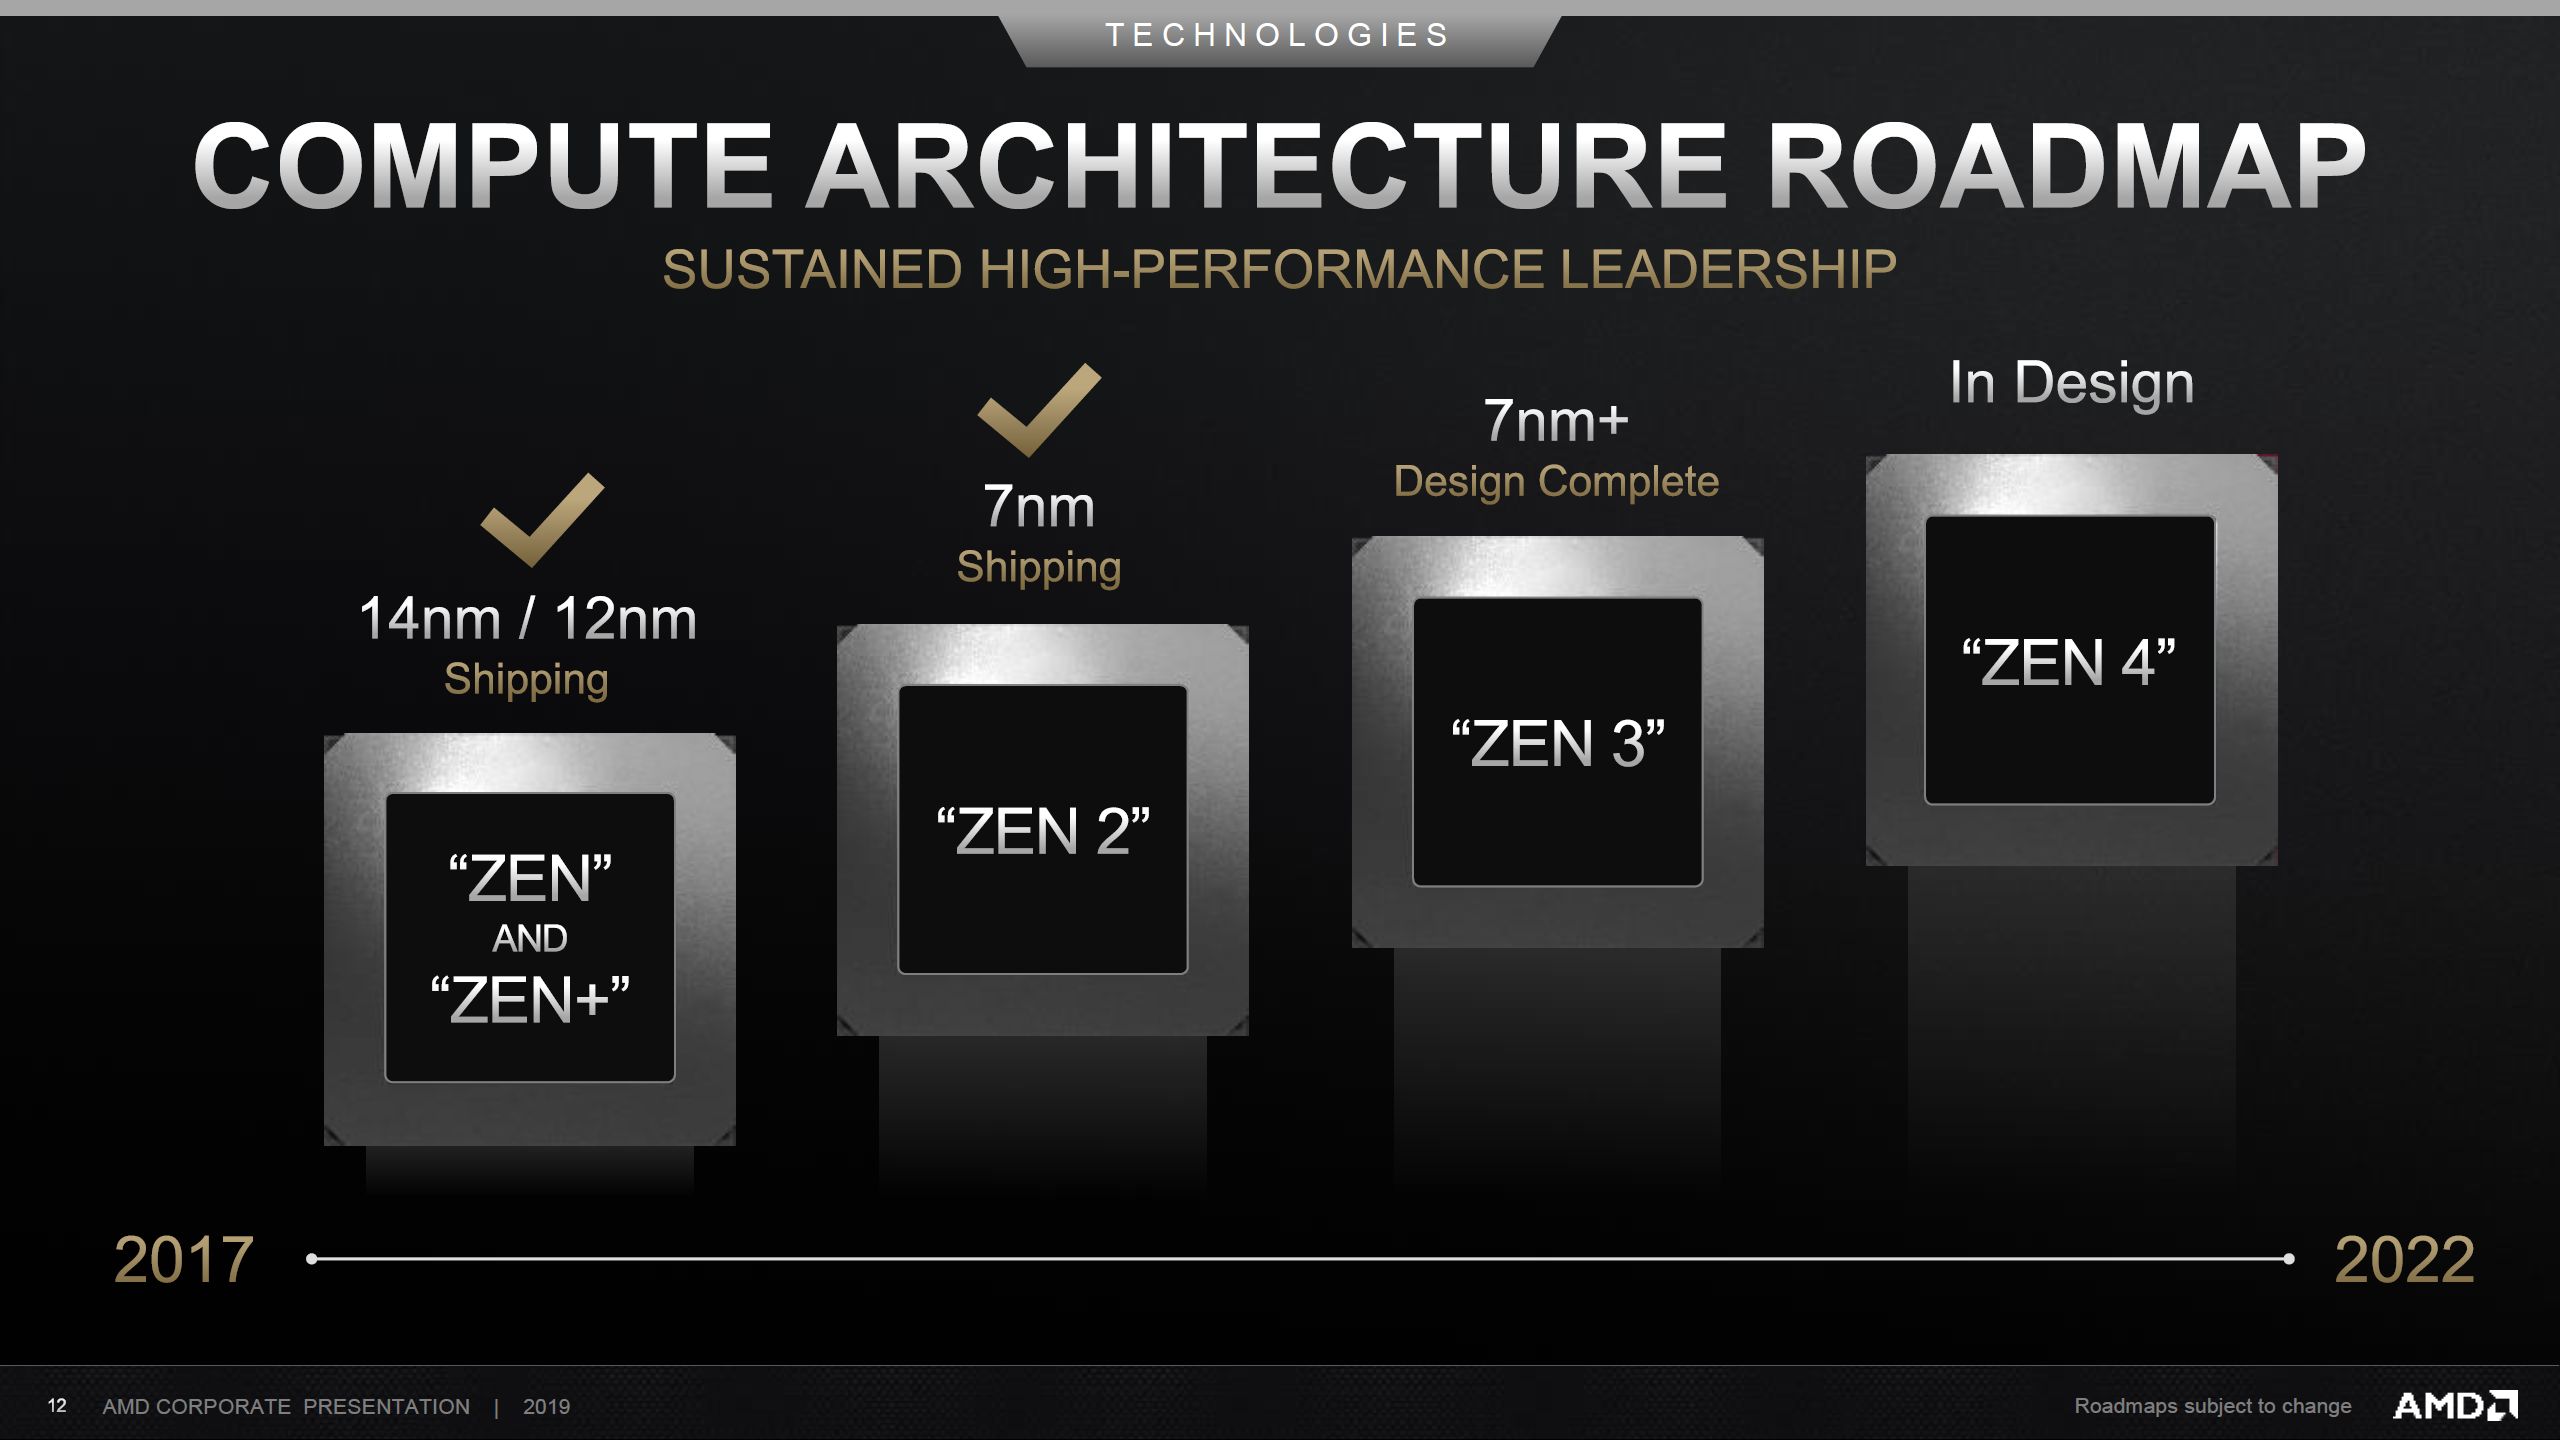 Zen 3’ten yeni haberler var: Beklenenden daha fazla IPC artışı ve 200 MHz daha yüksek frekans